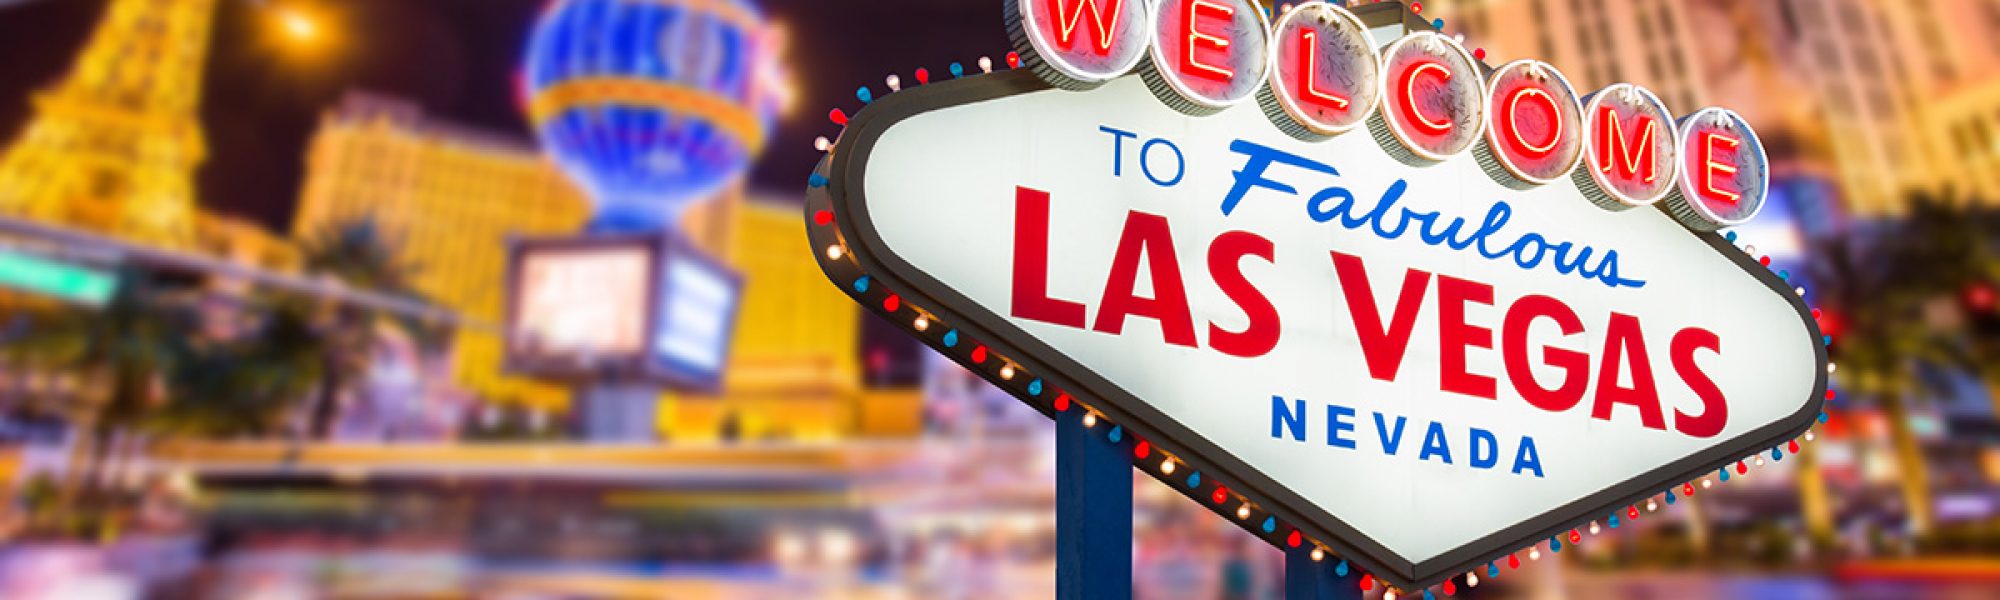 Getting Married in Las Vegas